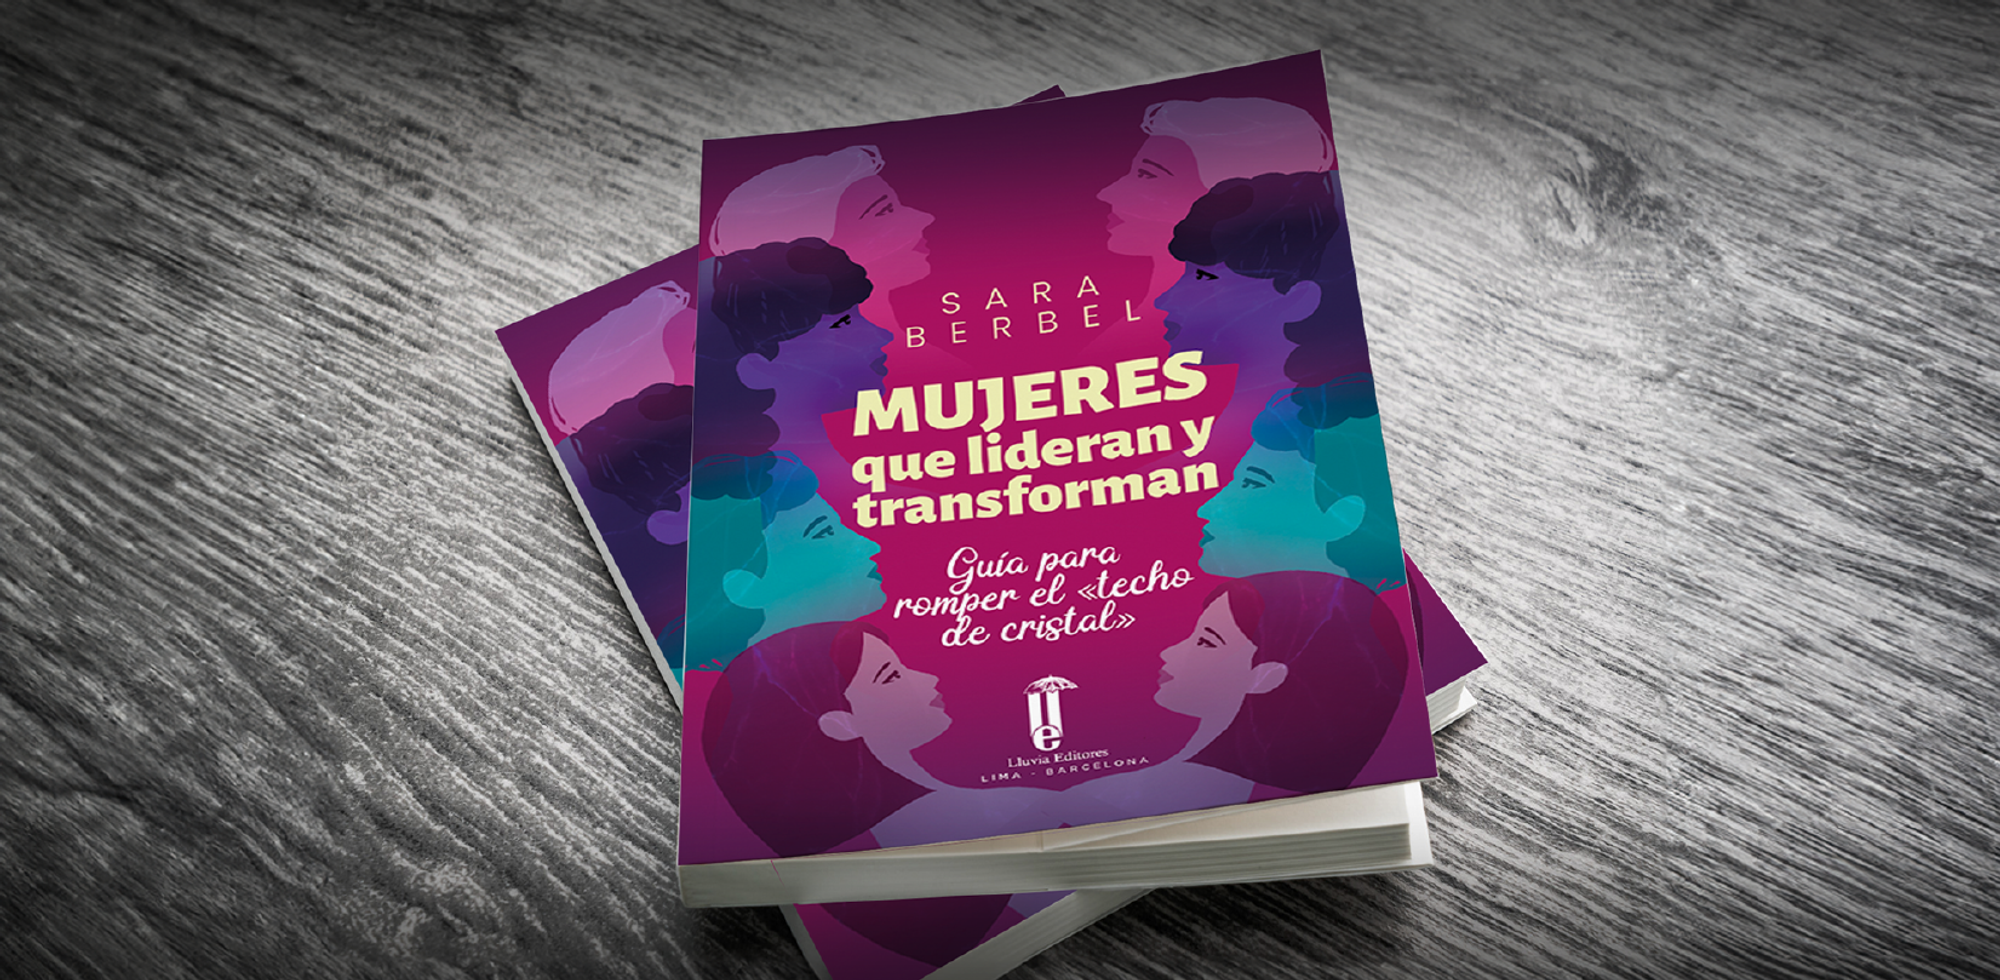 Presentación de  libro y conversatorio: Mujeres que lideran y transforman. Guía para romper el techo de cristal de Sara Berbel (España) 